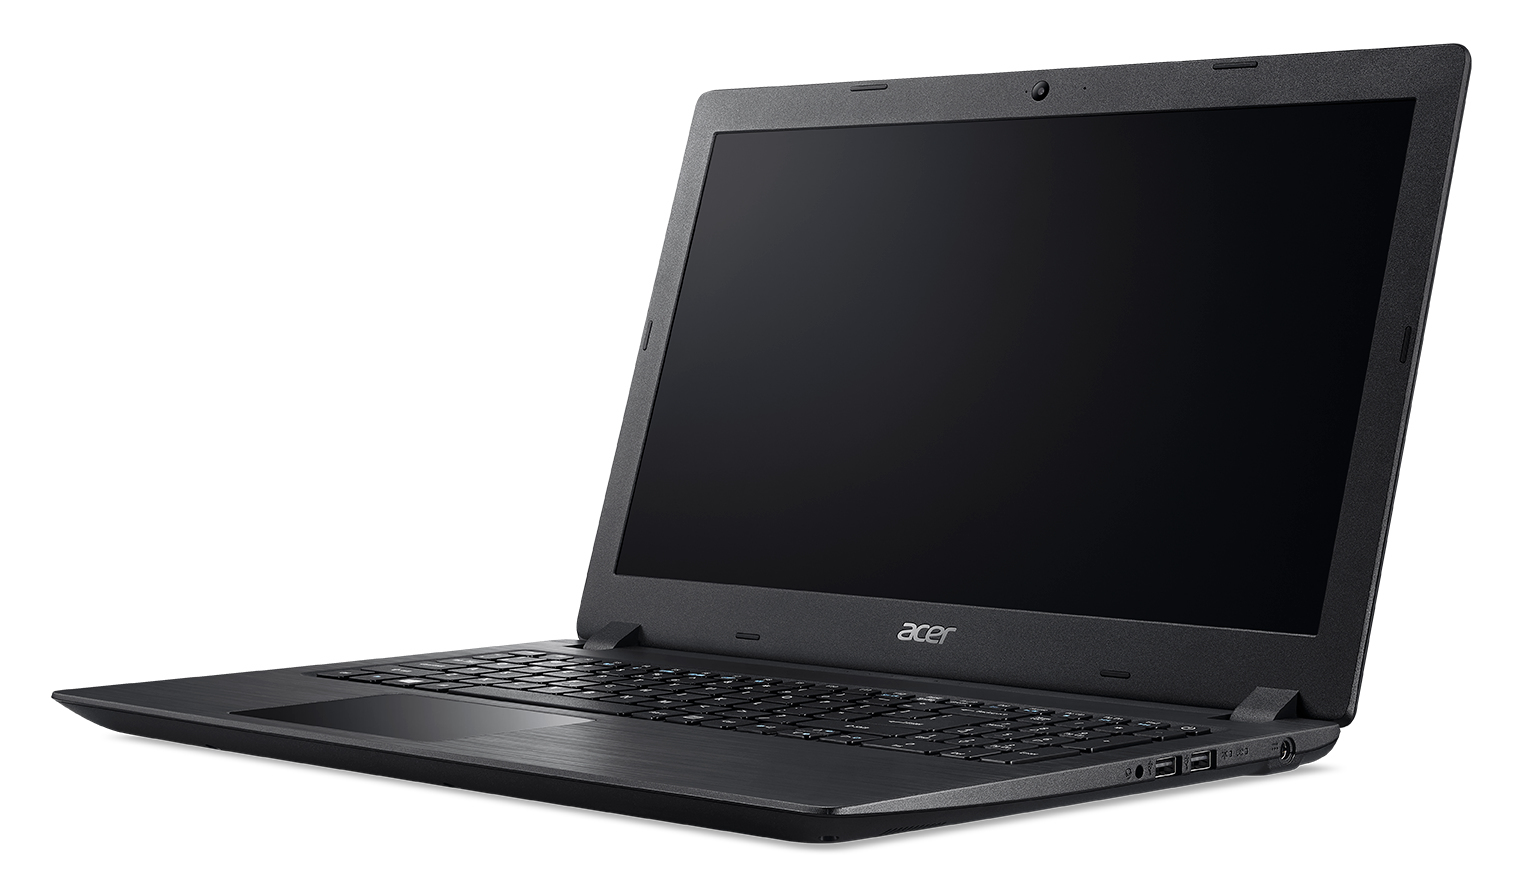 Laptop Acer A315-41-R4Re Amd Ryzen5 2500U 8Gb 1Tb 15.6" Win 10